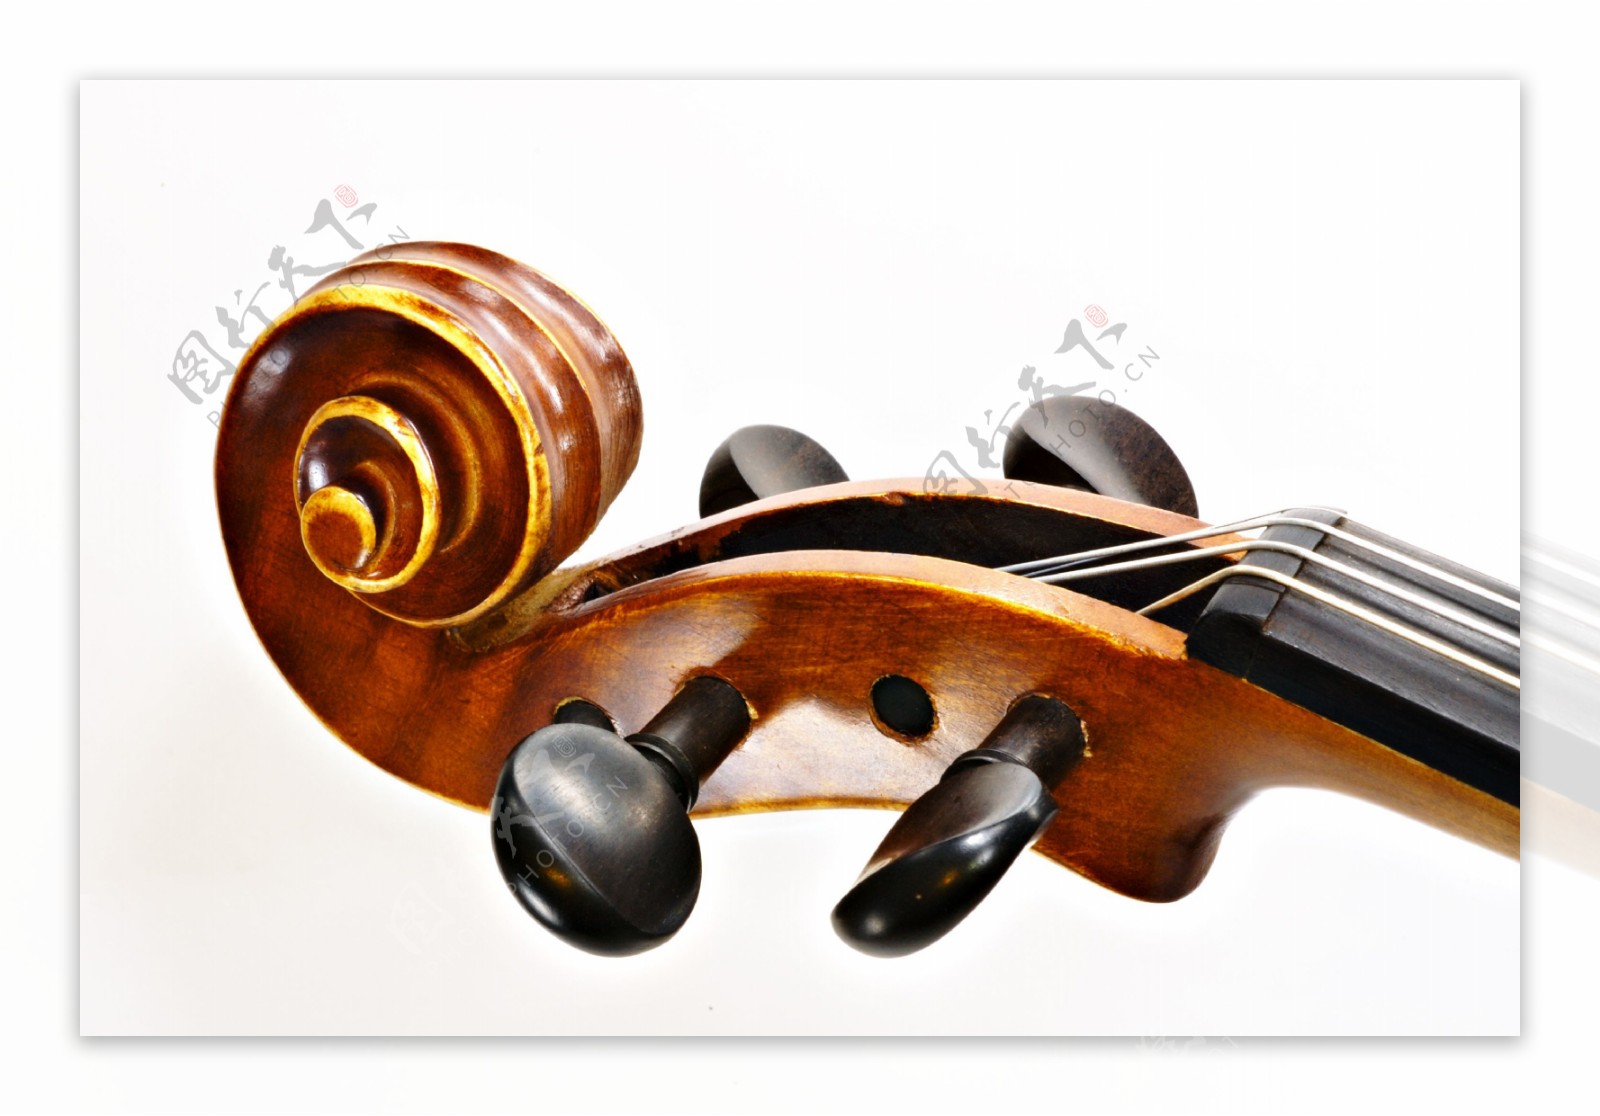 小提琴琴头图片